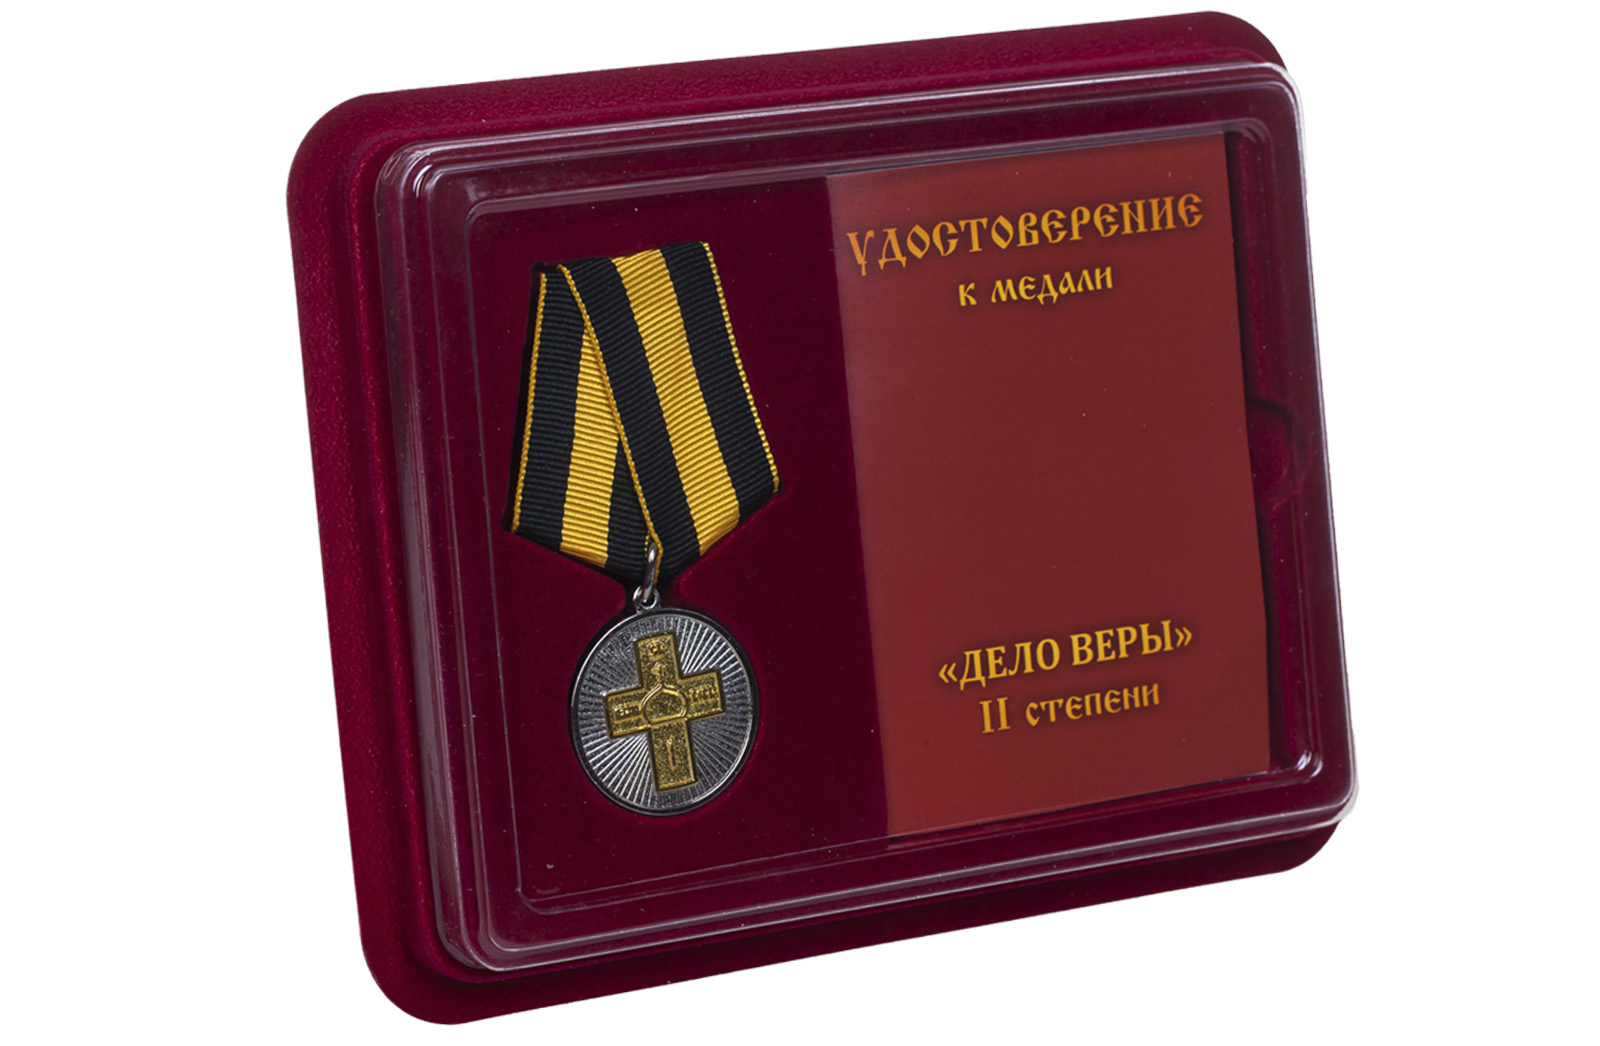 Православная медаль "Дело Веры" 2 степени 